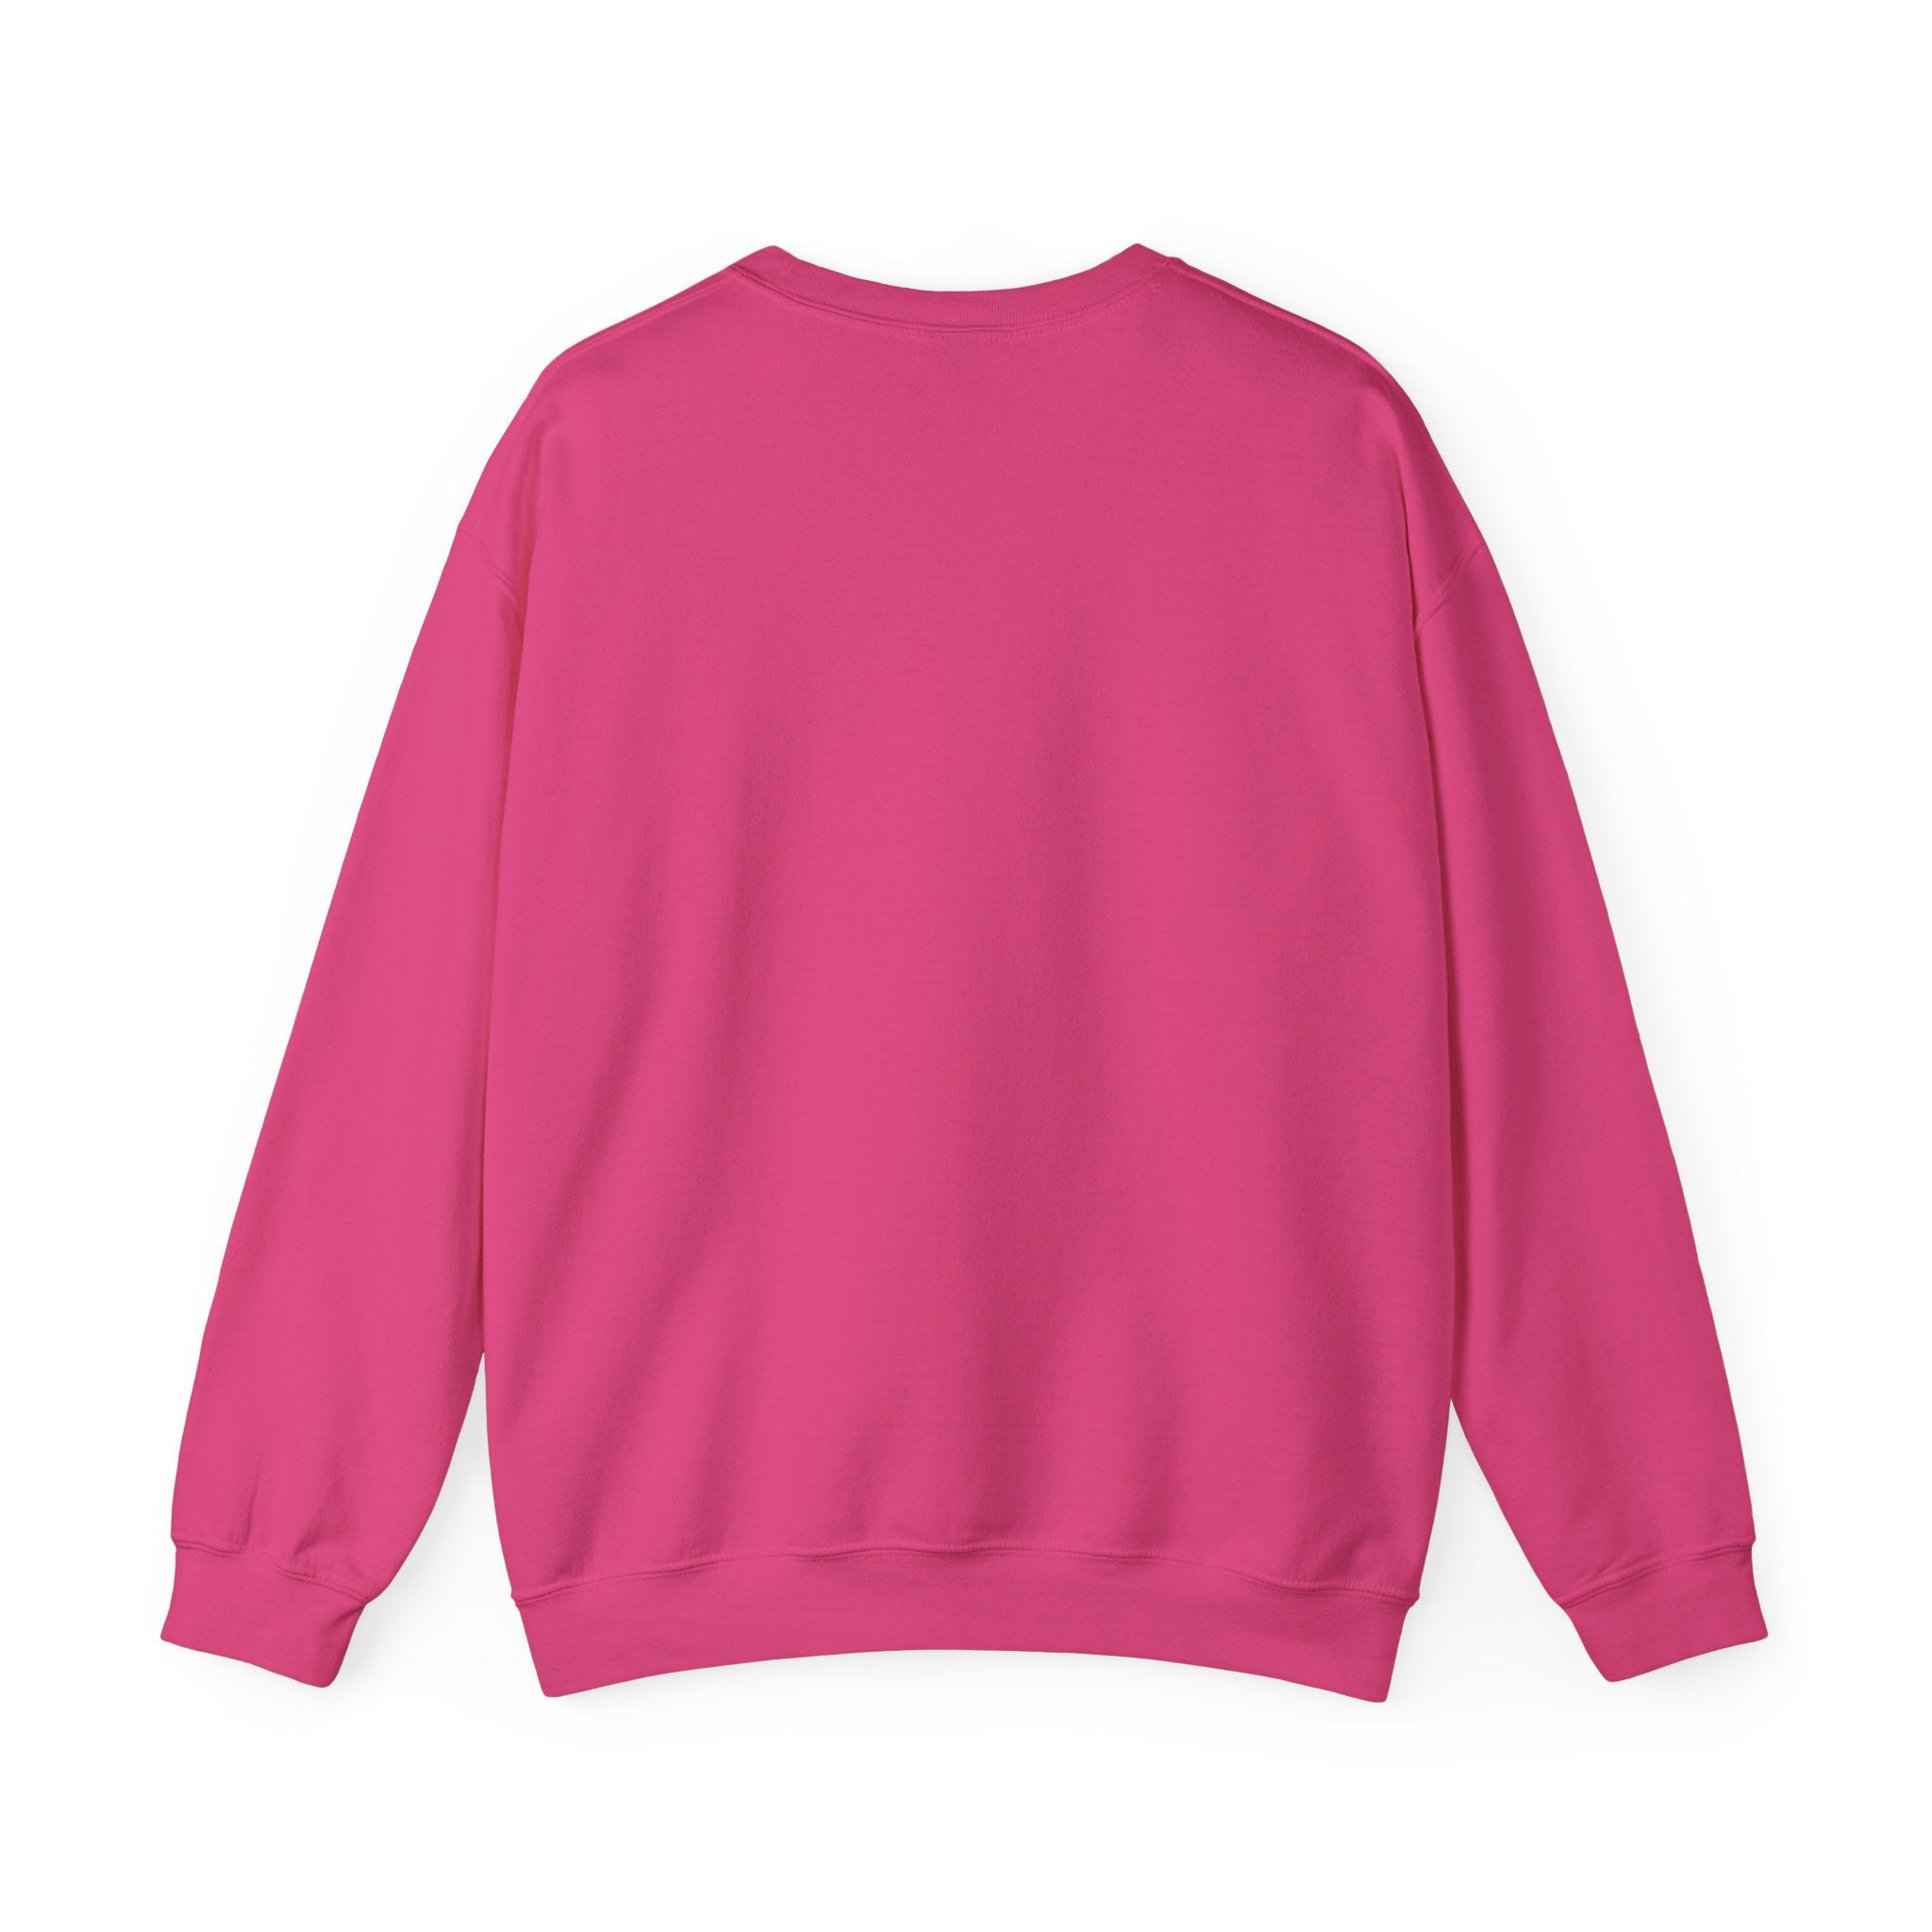 People by Pantaloons Pink Printed Sweatshirt